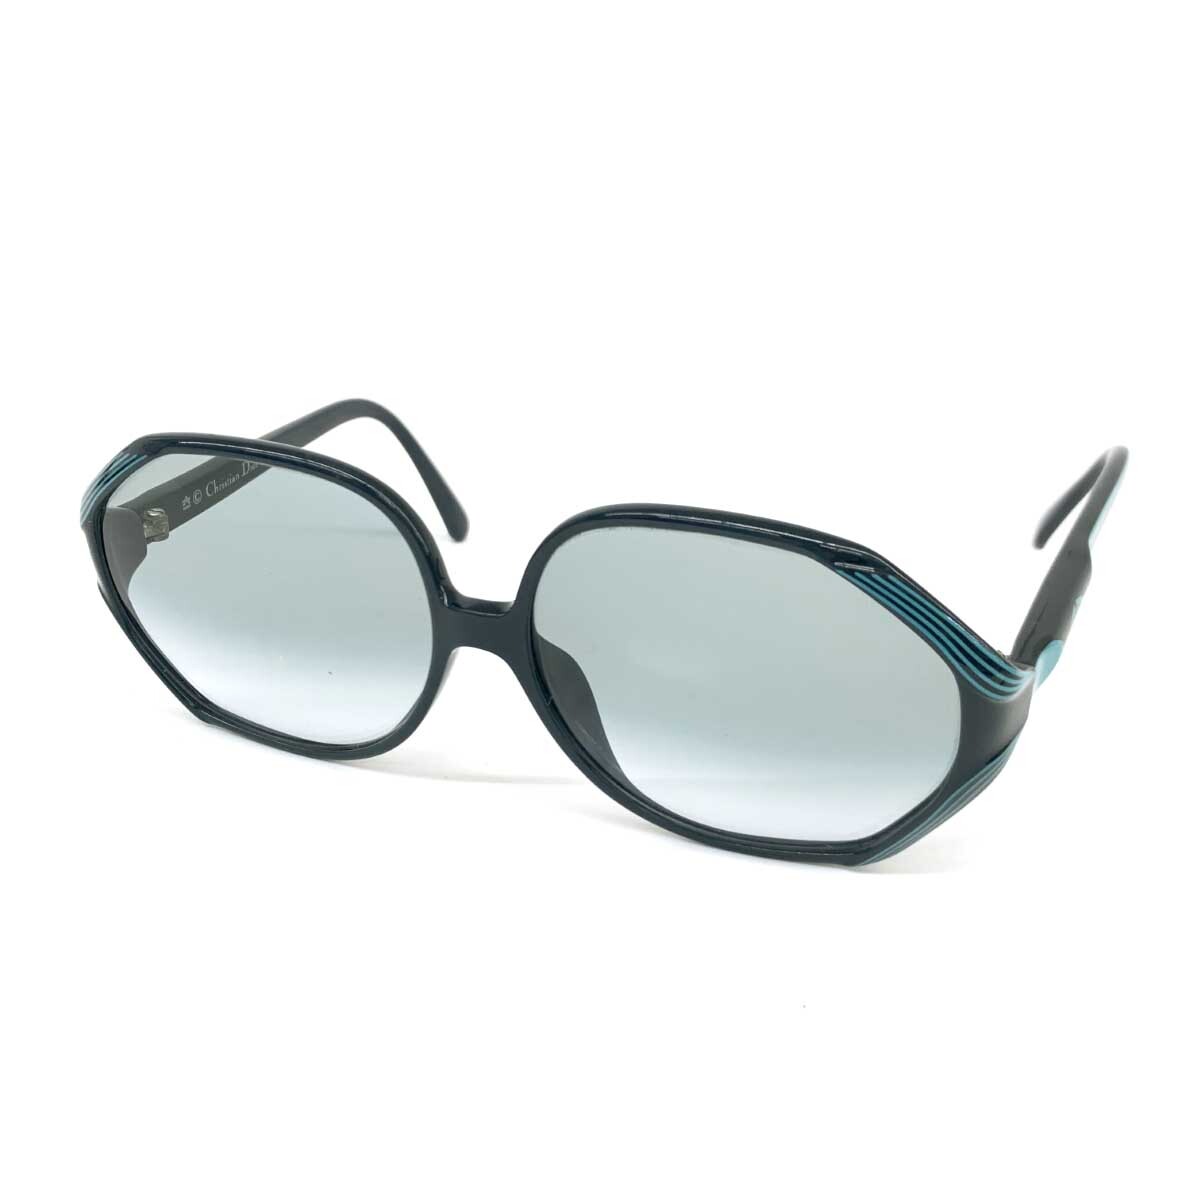 ◆Christian Dior クリスチャンディオール サングラス◆2323A ターコイズブルー レディース ヴィンテージ sunglasses 服飾小物の画像1